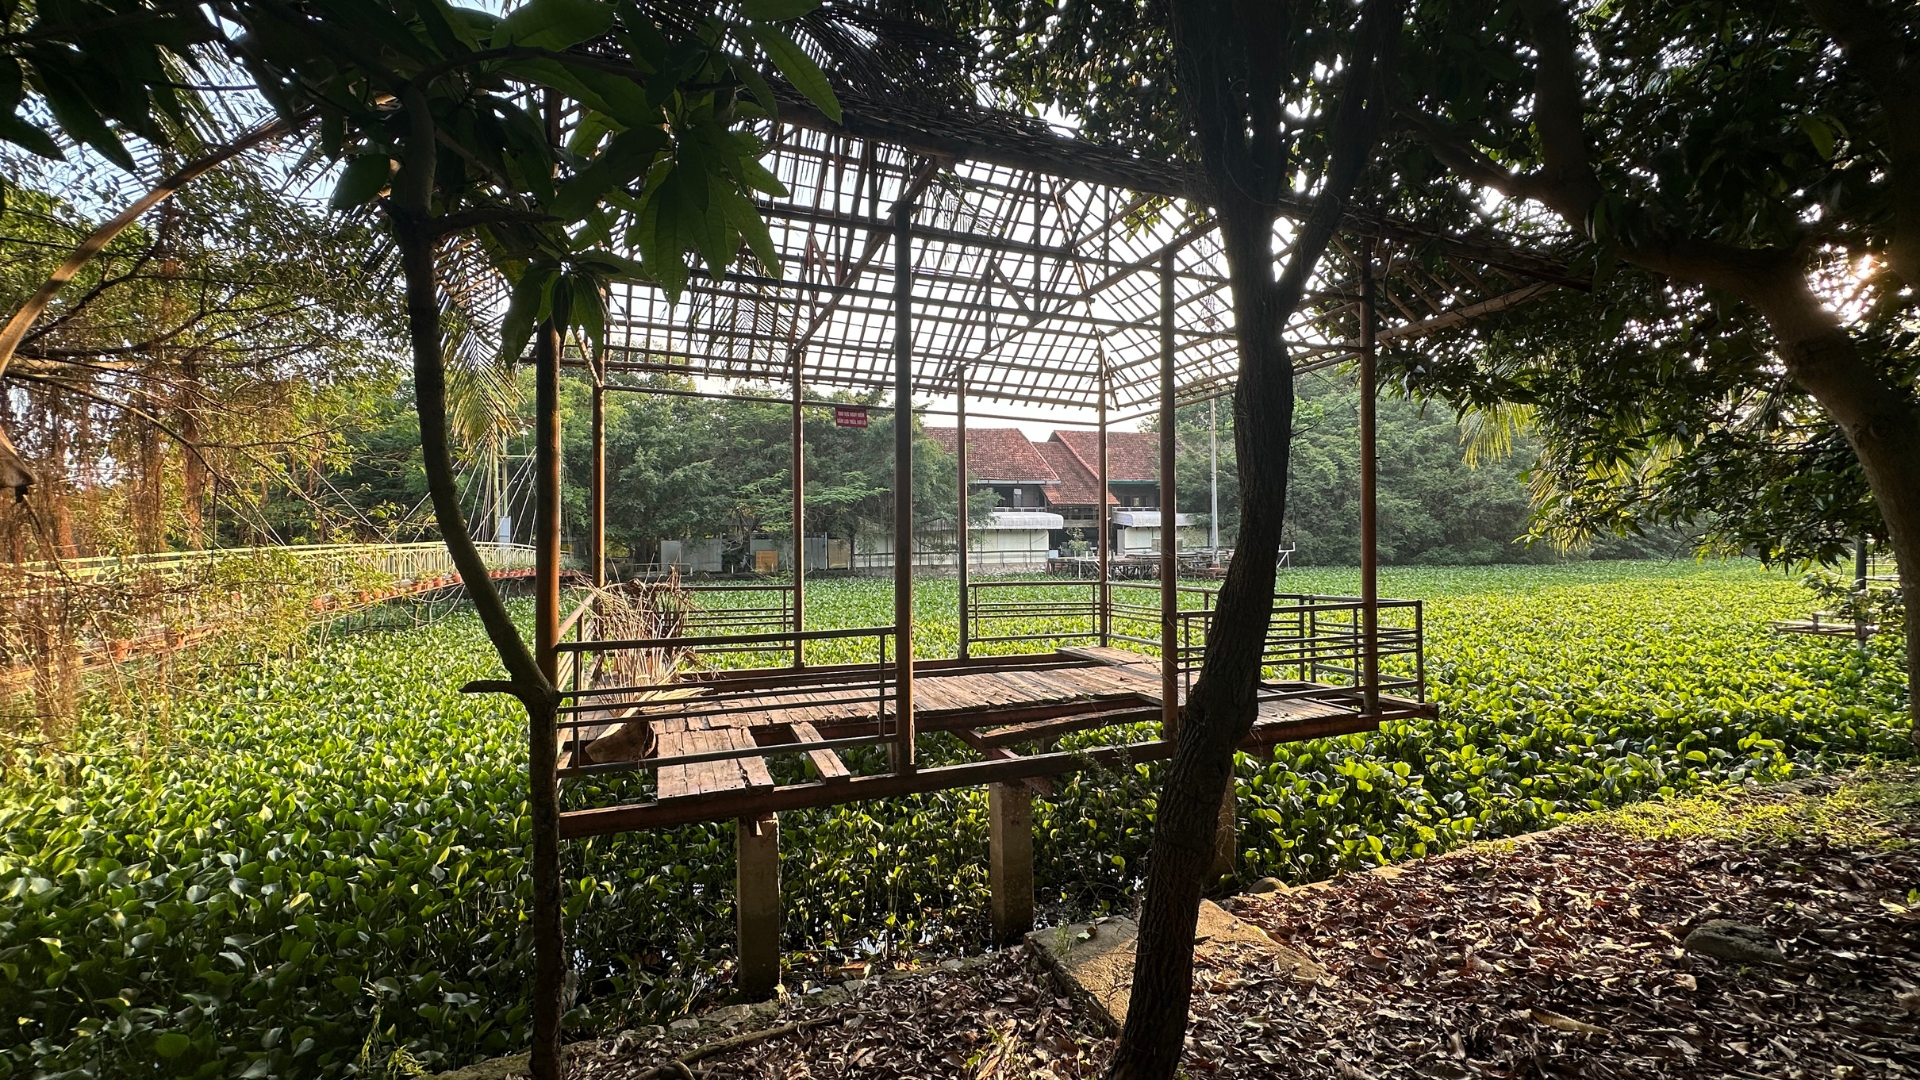 Khu công viên sinh thái rộng hơn 15ha tại Hà Nội: Từ đồ án lý tưởng đến hiện thực phũ phàng - Ảnh 7.